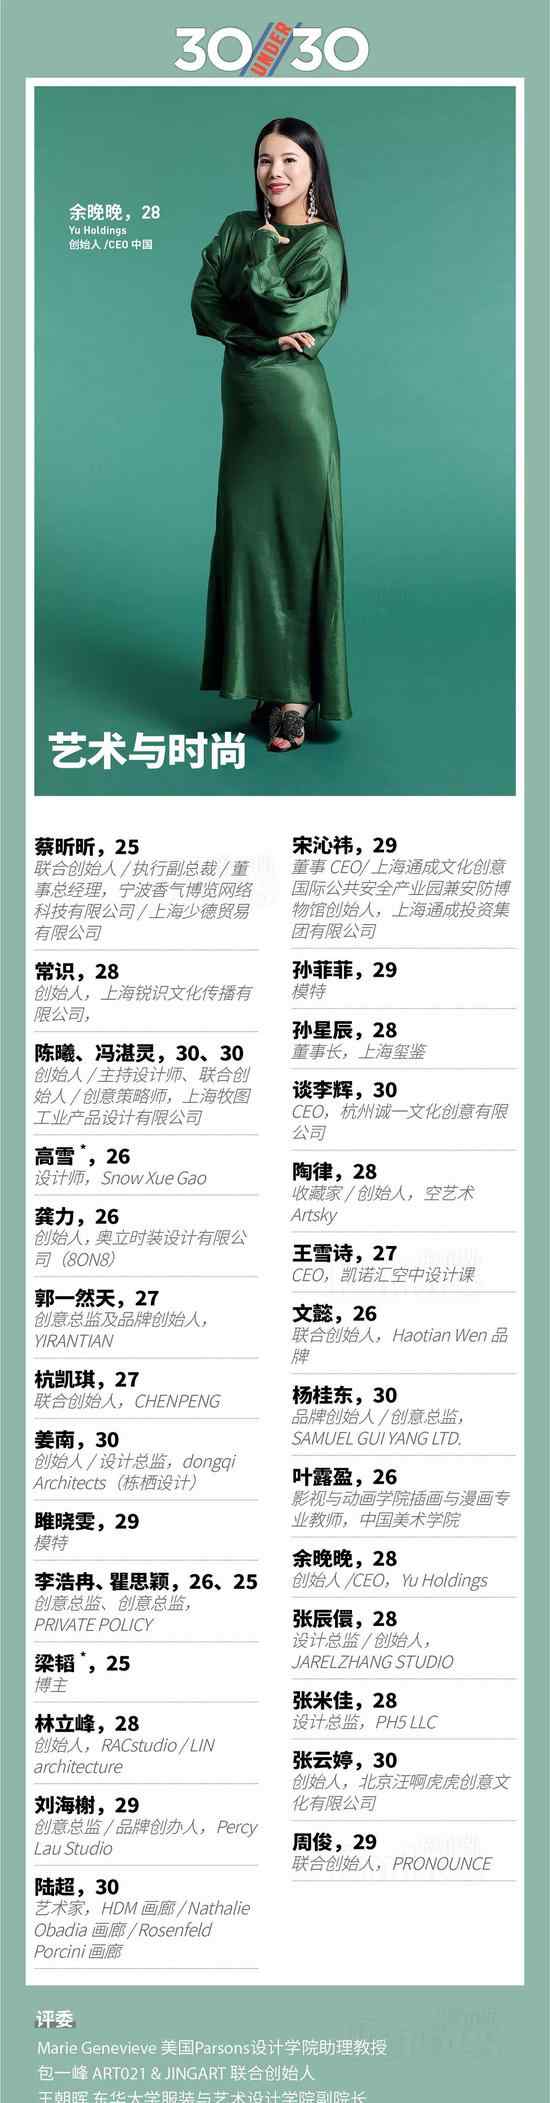 福布斯榜单 2018福布斯中国30岁以下30位精英全榜单